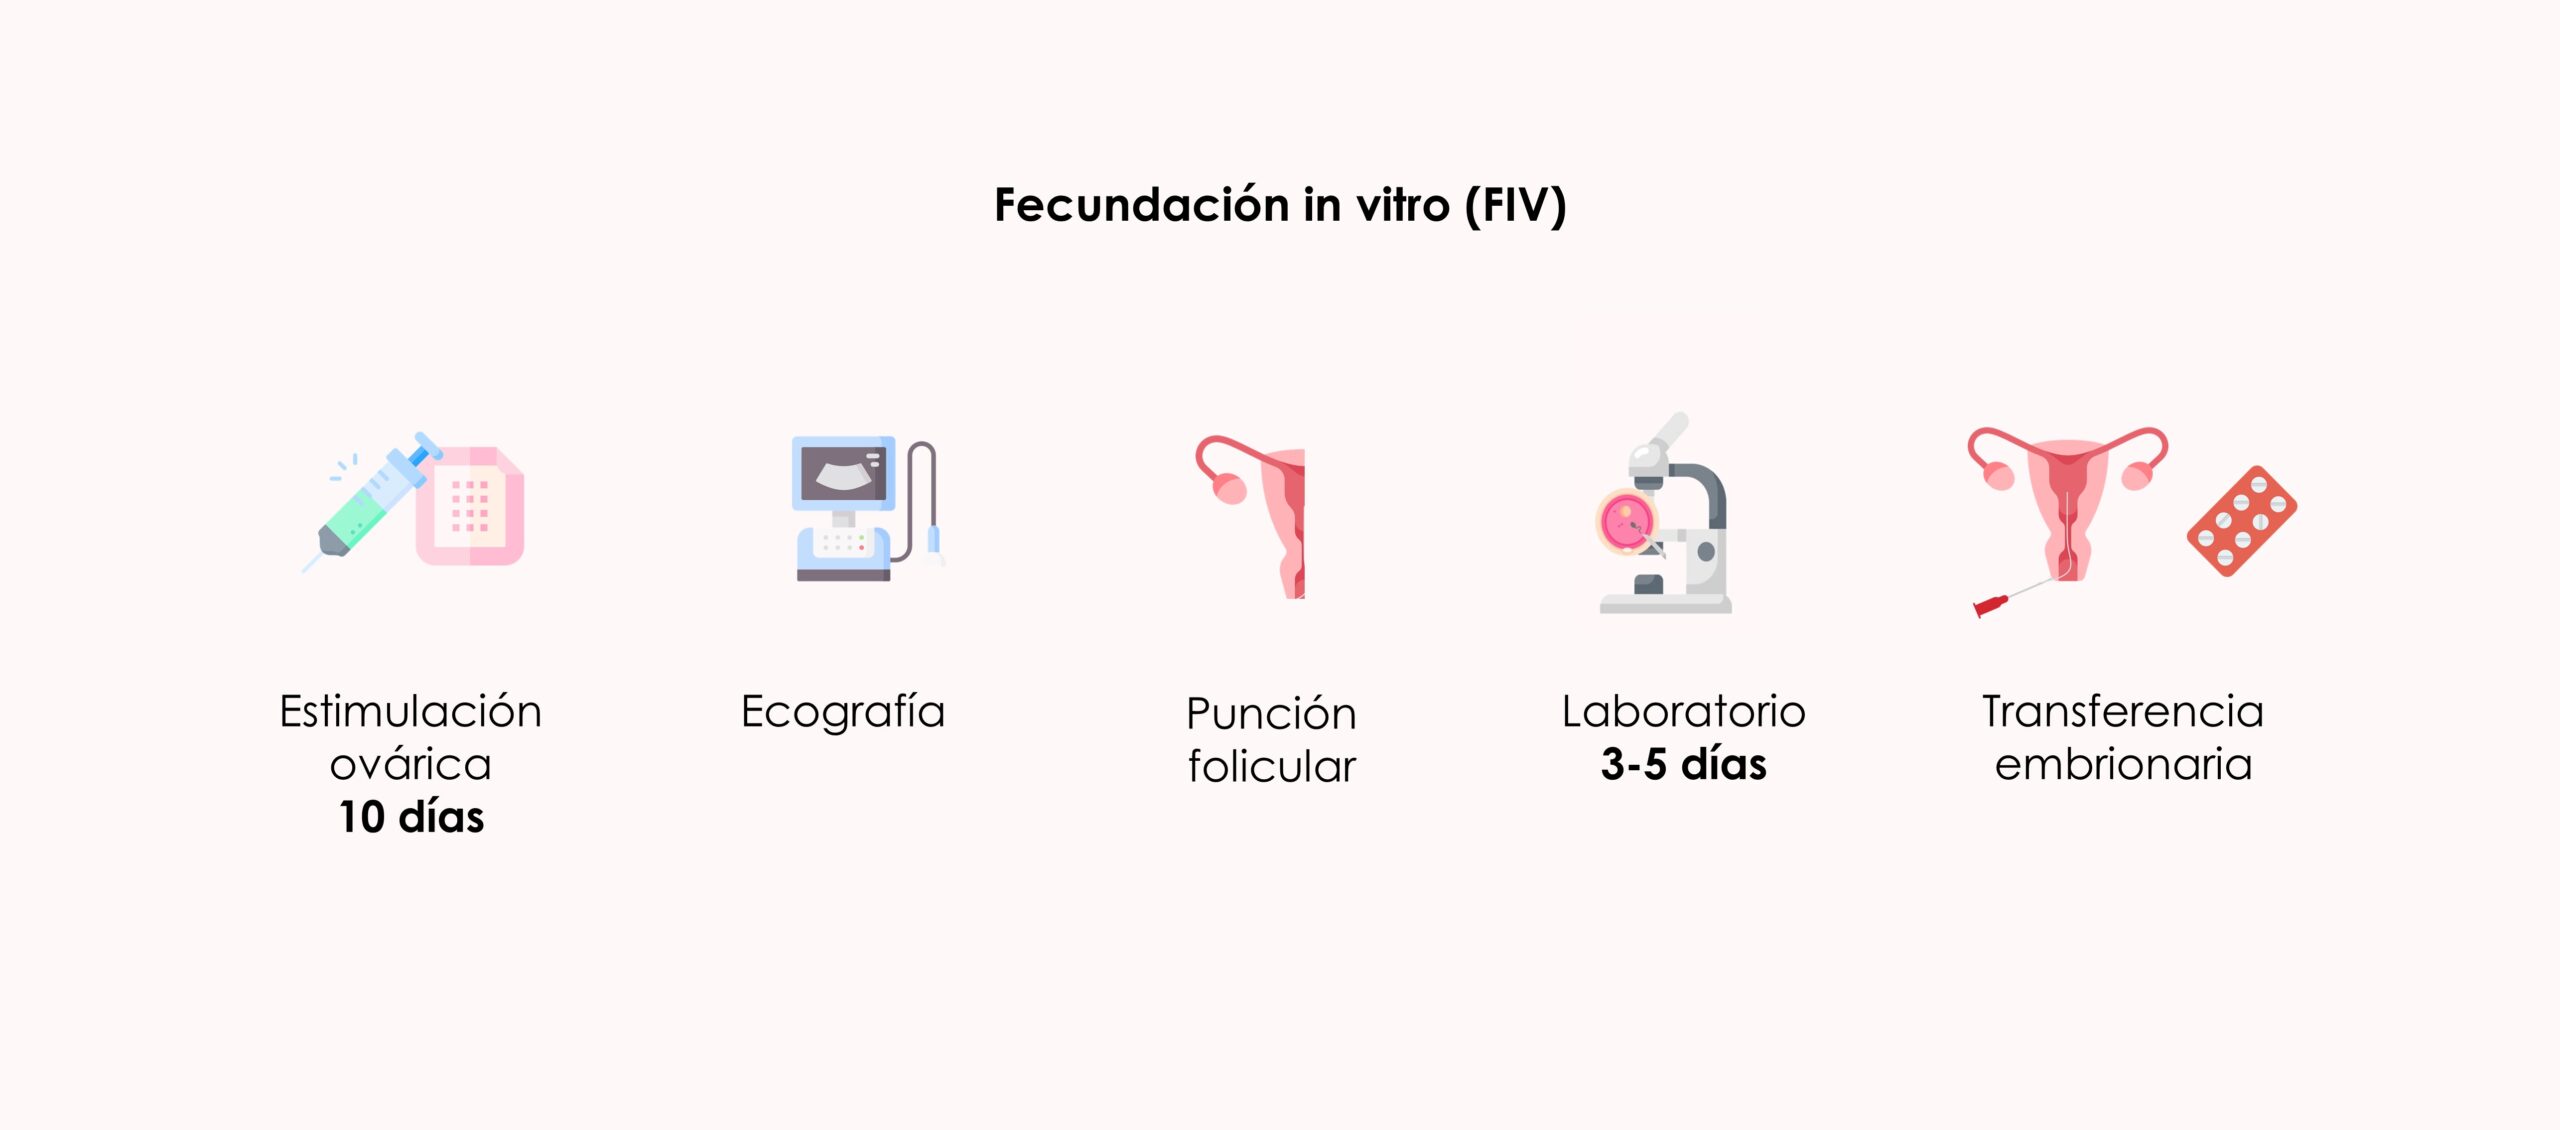 En la Fecundación in vitro (FIV), la progesterona se utiliza antes y después de la transferencia embrionaria